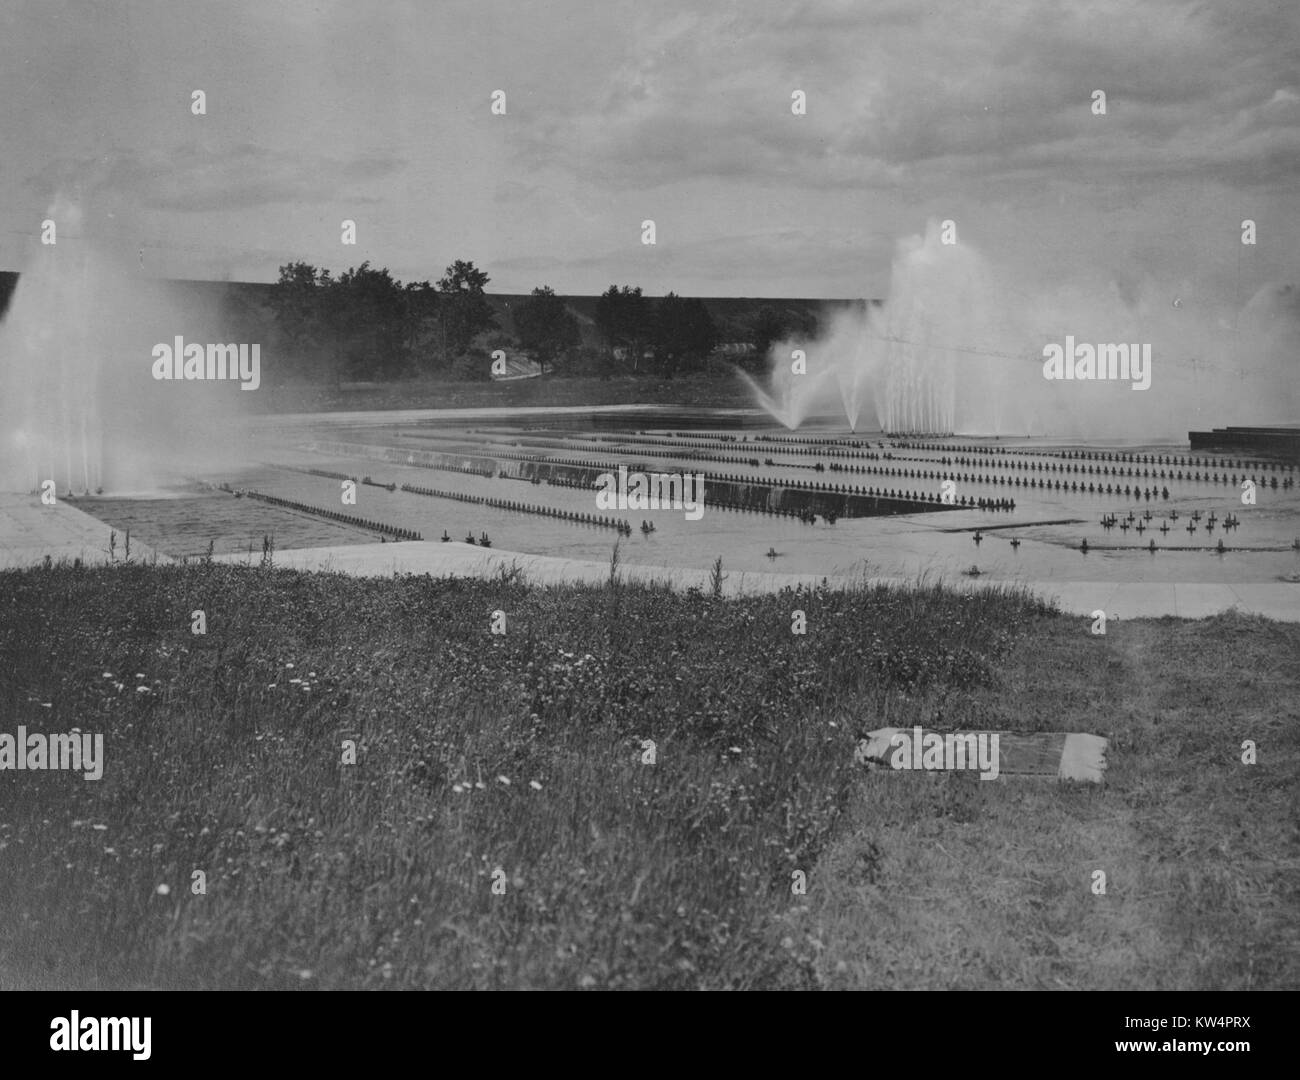 L'eau est vaporisée dans l'air comme l'aération du réservoir d'Ashokan approvisionne le système est en opération partielle pendant la construction de l'Aqueduc de Catskill, New York, États-Unis, le 23 juin 1916. À partir de la Bibliothèque publique de New York. Banque D'Images